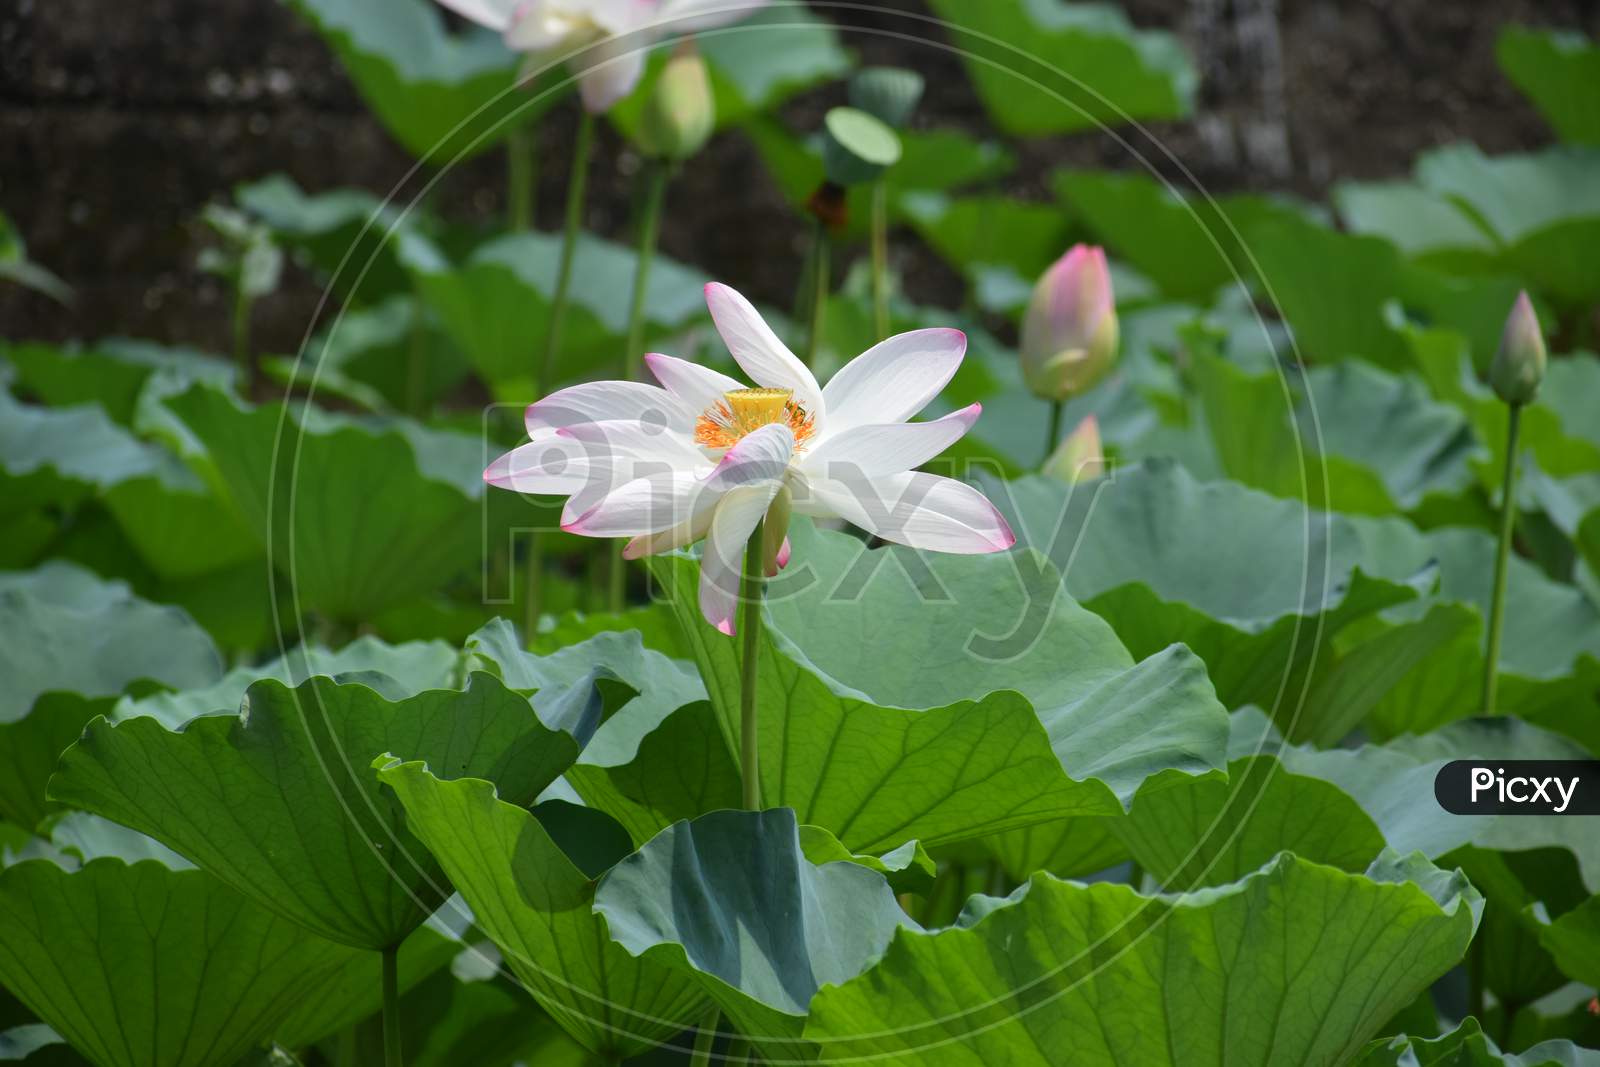 Sacred lotus flower